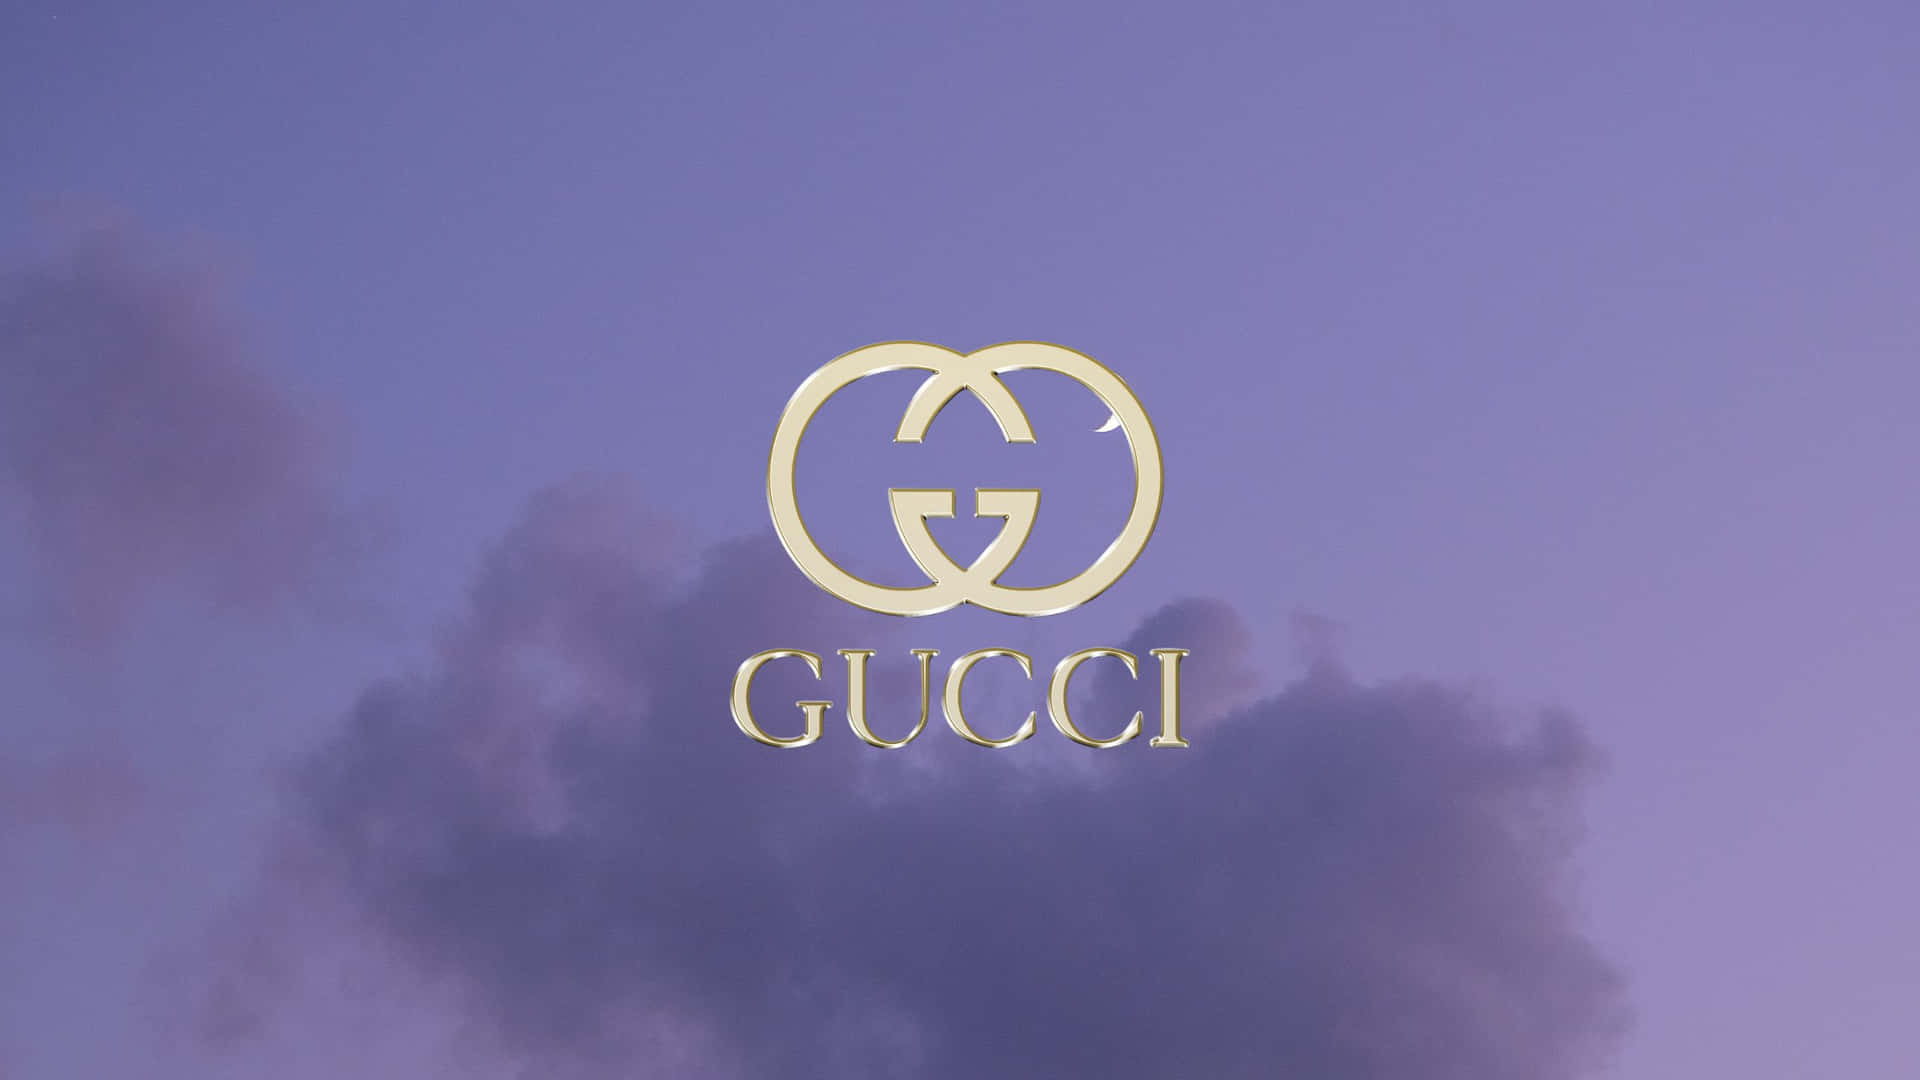 Verbessernsie Ihr Schuhspiel Mit Den Neuesten Lila Gucci Sneakers Wallpaper